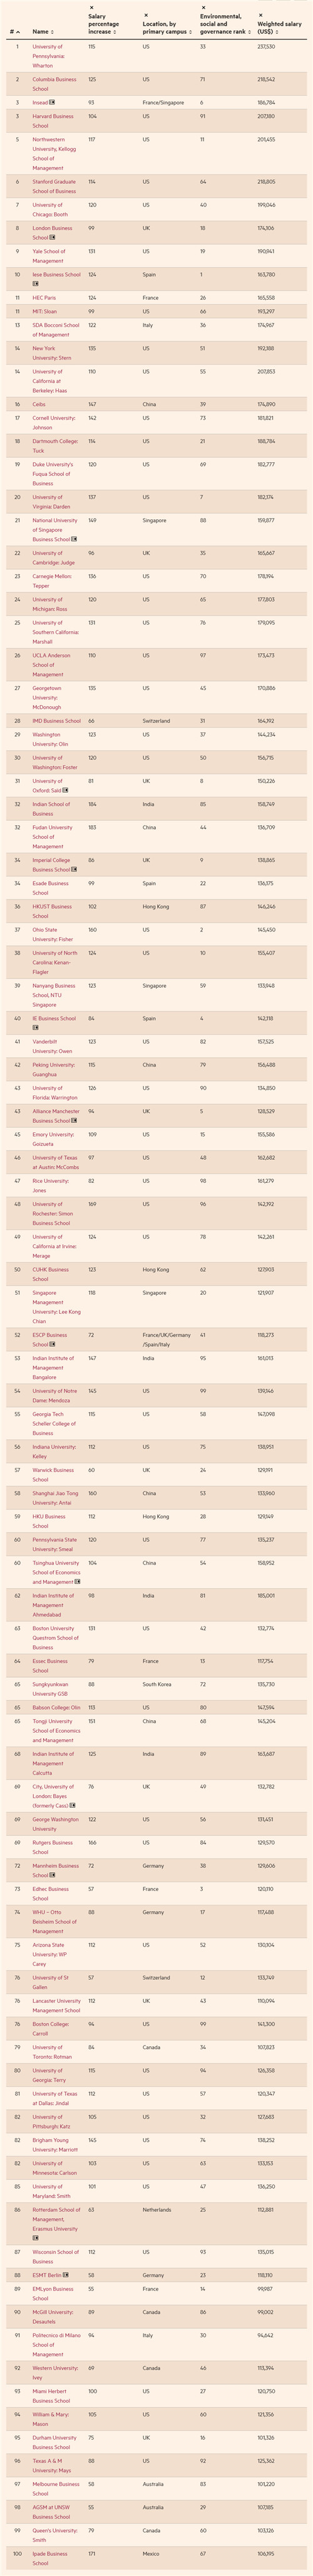 2022年全球最佳MBA院校排名公布 内地6所商学院上榜